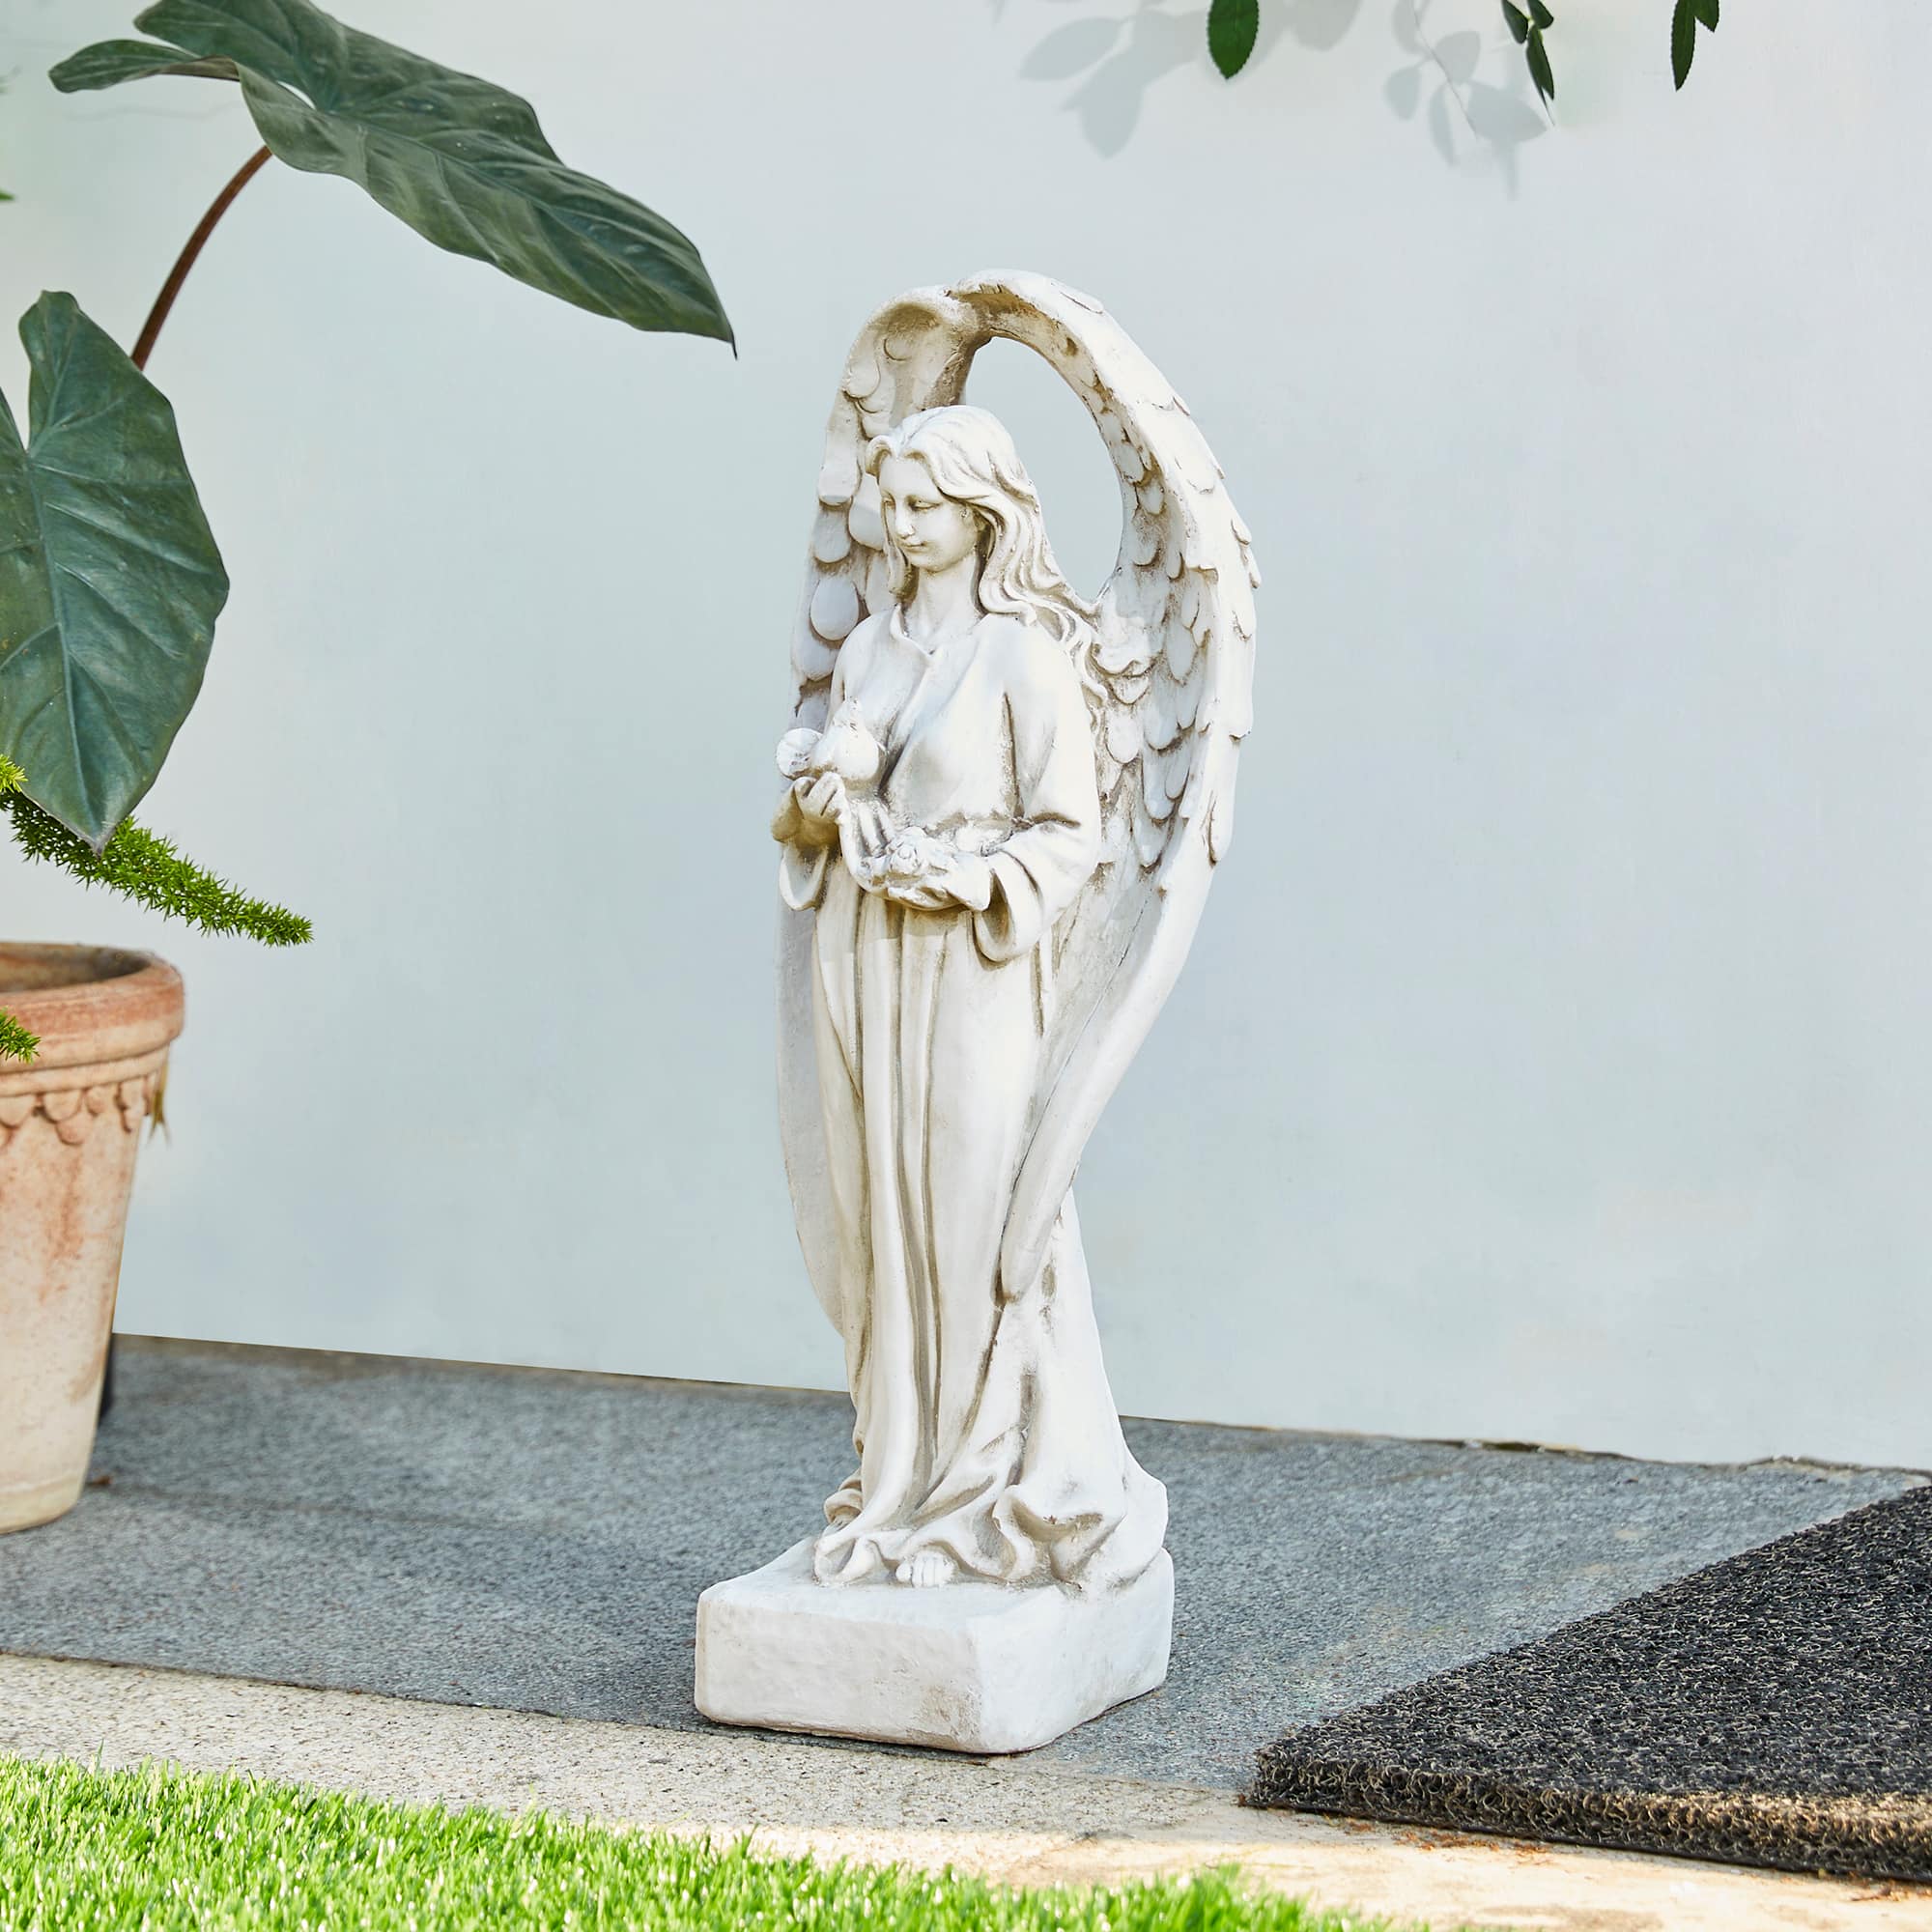 Glitzhome&#xAE; 20.5&#x22; Standing Archangel Garden Statue